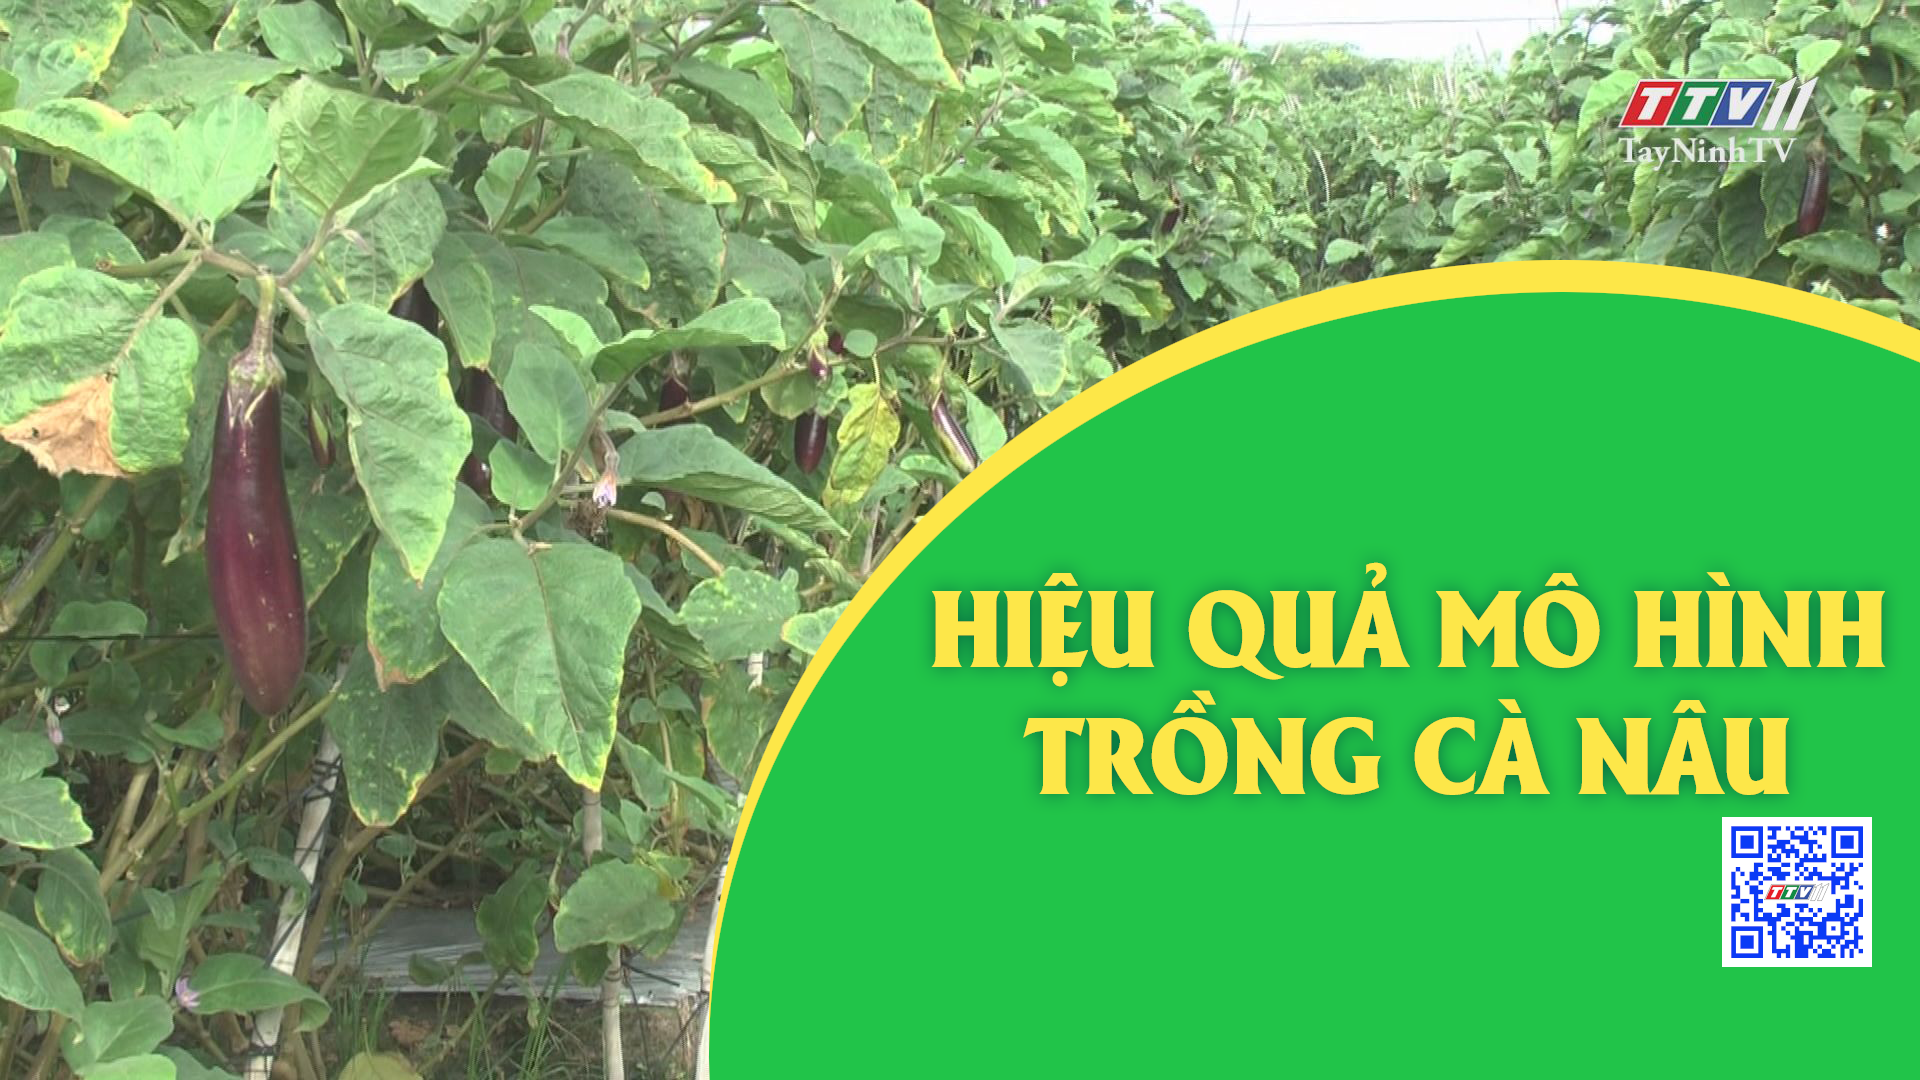 Hiệu quả mô hình trồng cà nâu | Nông nghiệp Tây Ninh | TayNinhTV